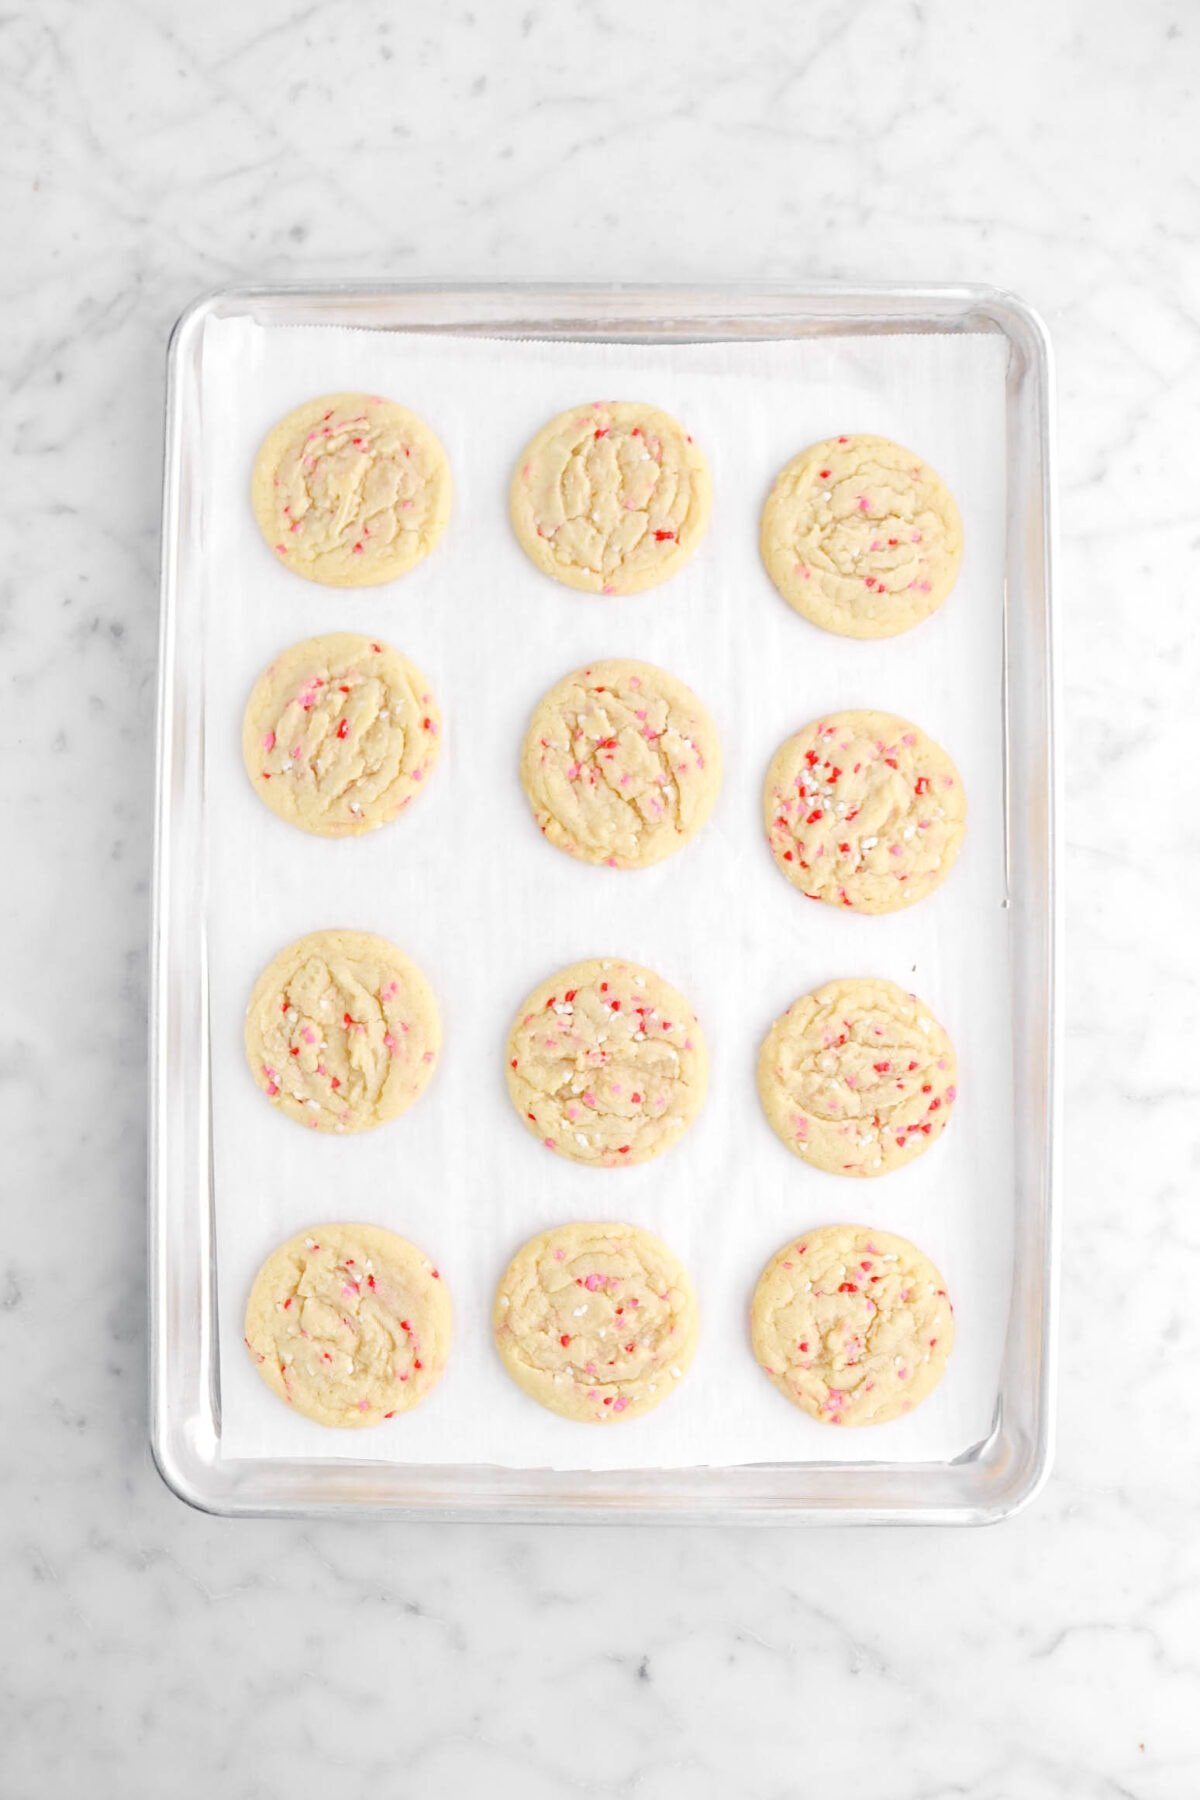 twelve baked cookies on lined sheet pan.